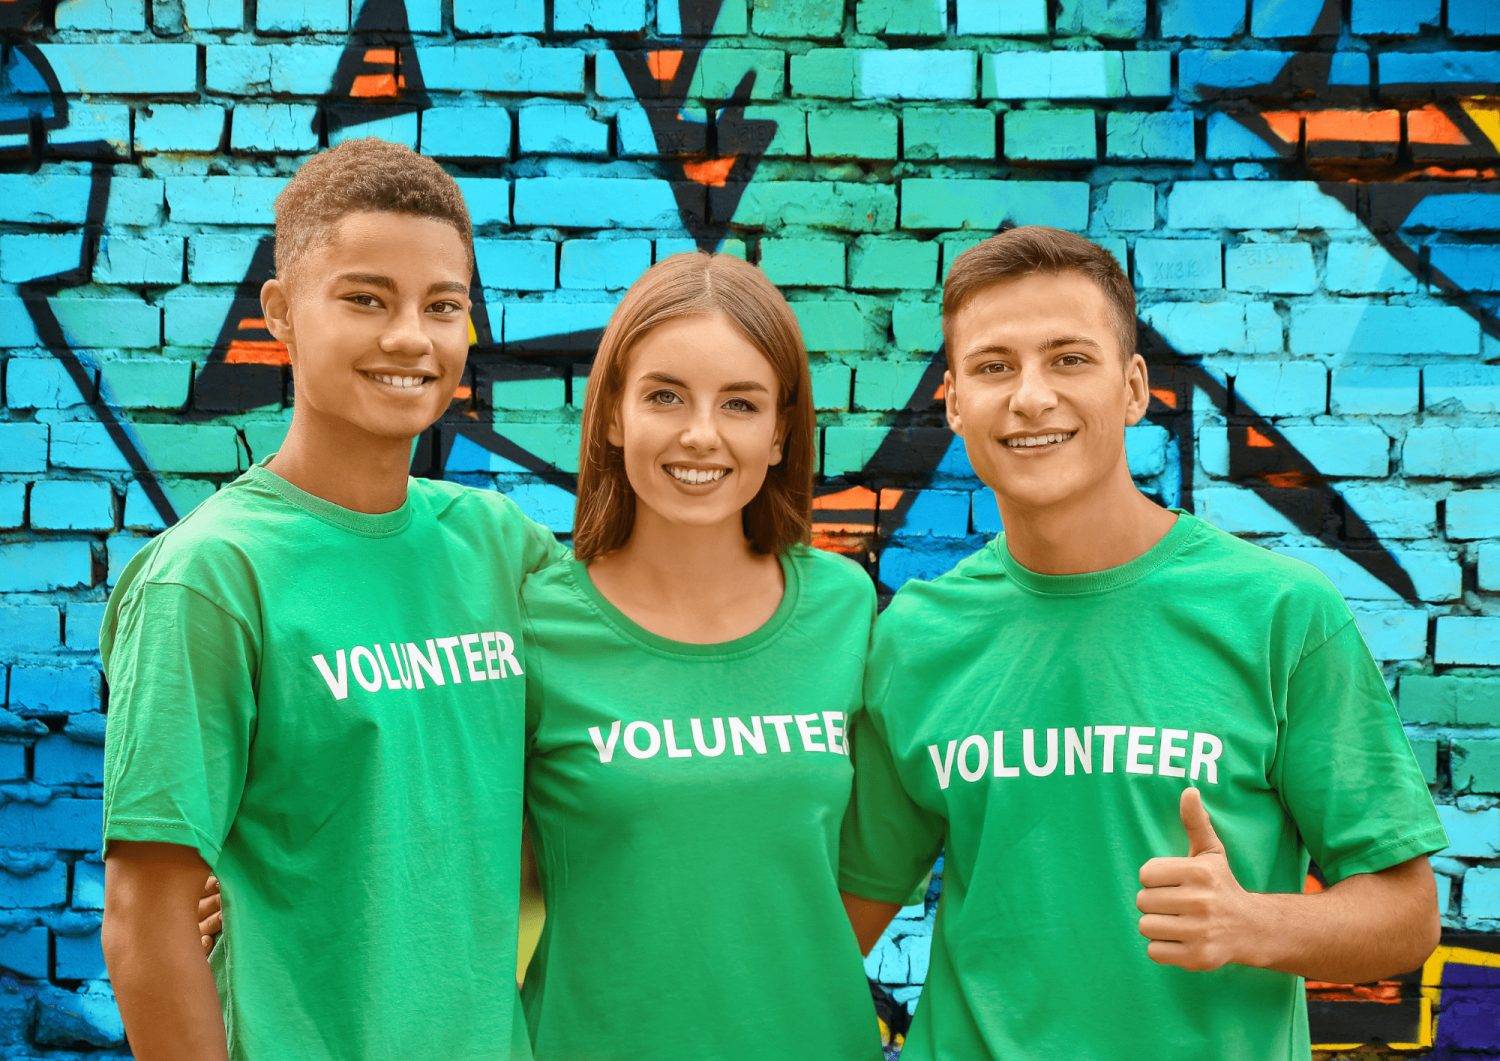 young volunteers